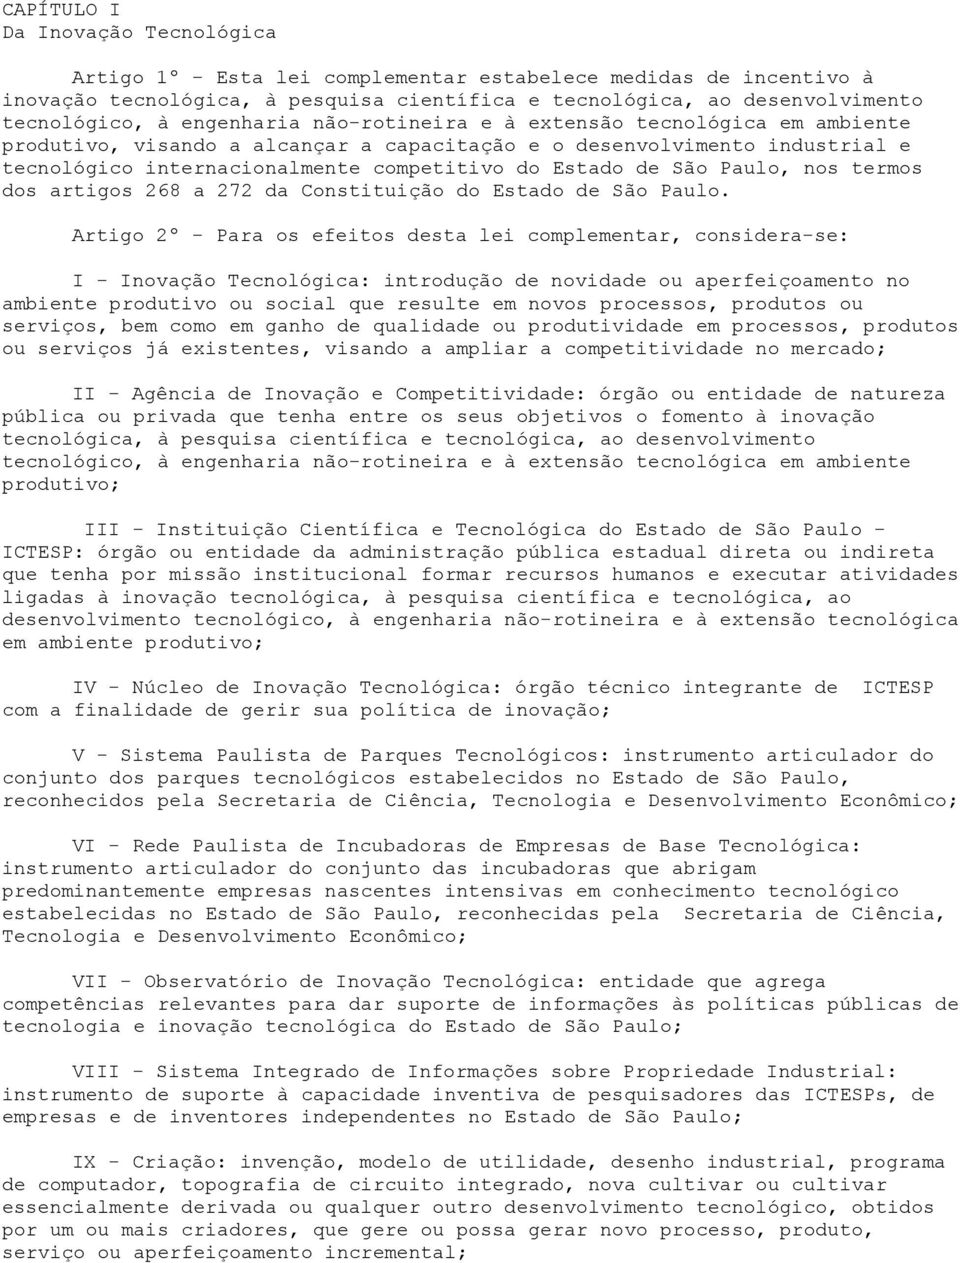 Paulo, nos termos dos artigos 268 a 272 da Constituição do Estado de São Paulo.